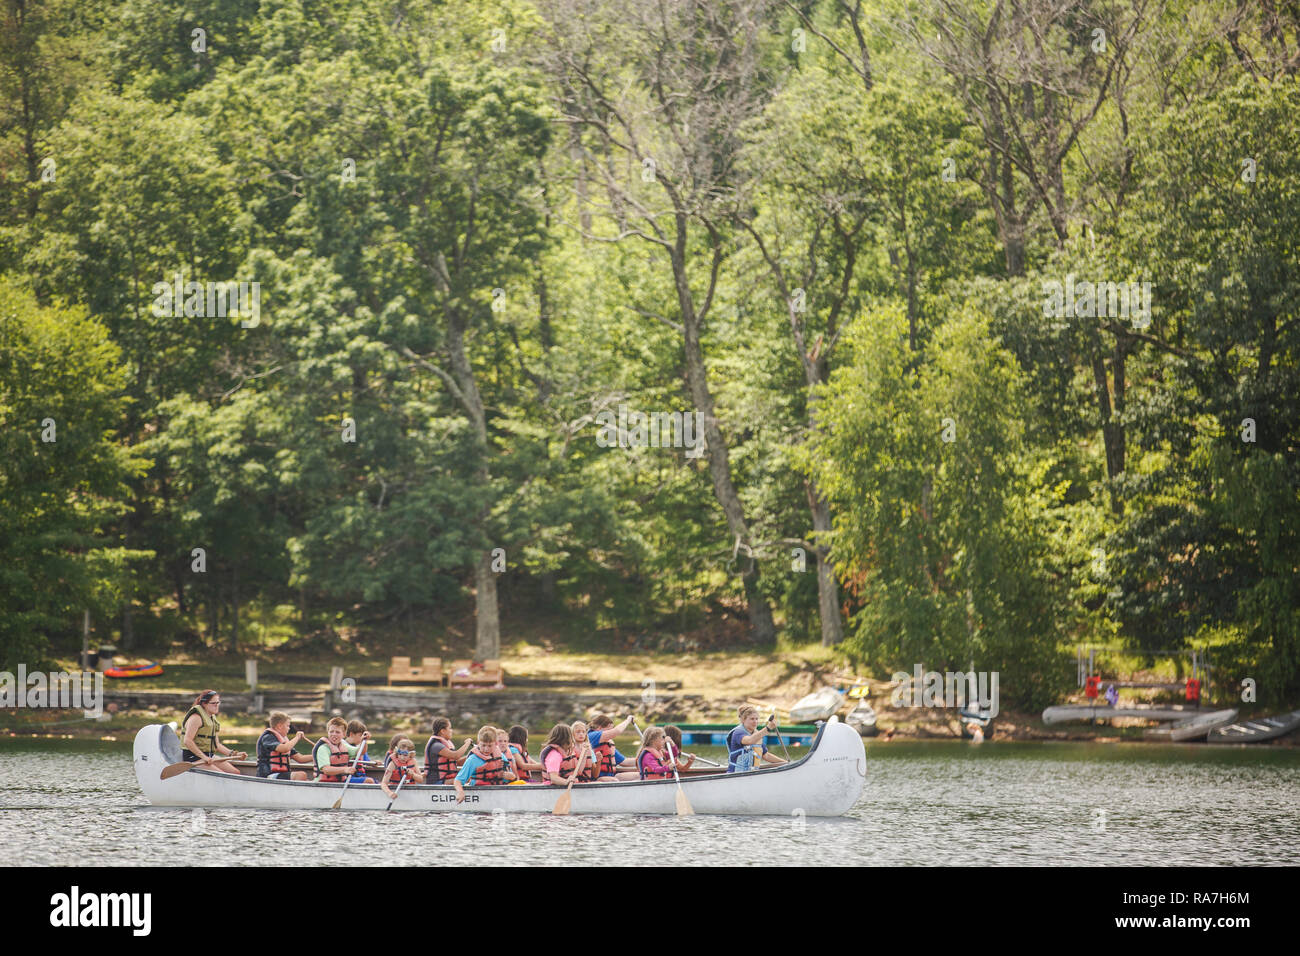 Viele kleine Kinder, die Rettungsanker tragen, füllen ein großes Kanu, das während ihres Sommerlagers in einem See paddelt. Stockfoto